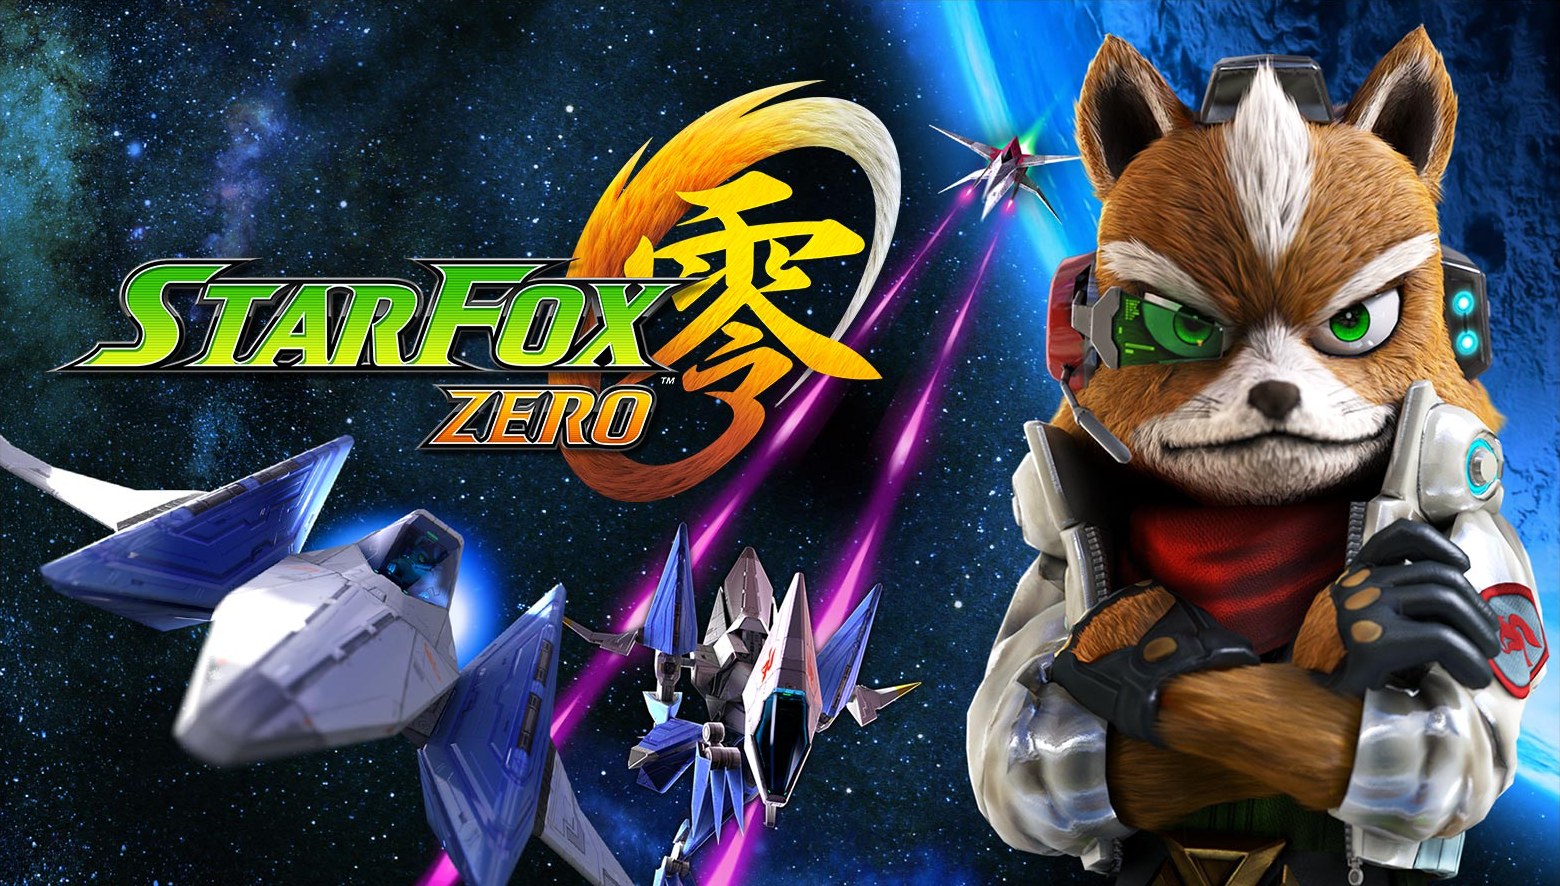 Star Fox Zero déploie ses charmes